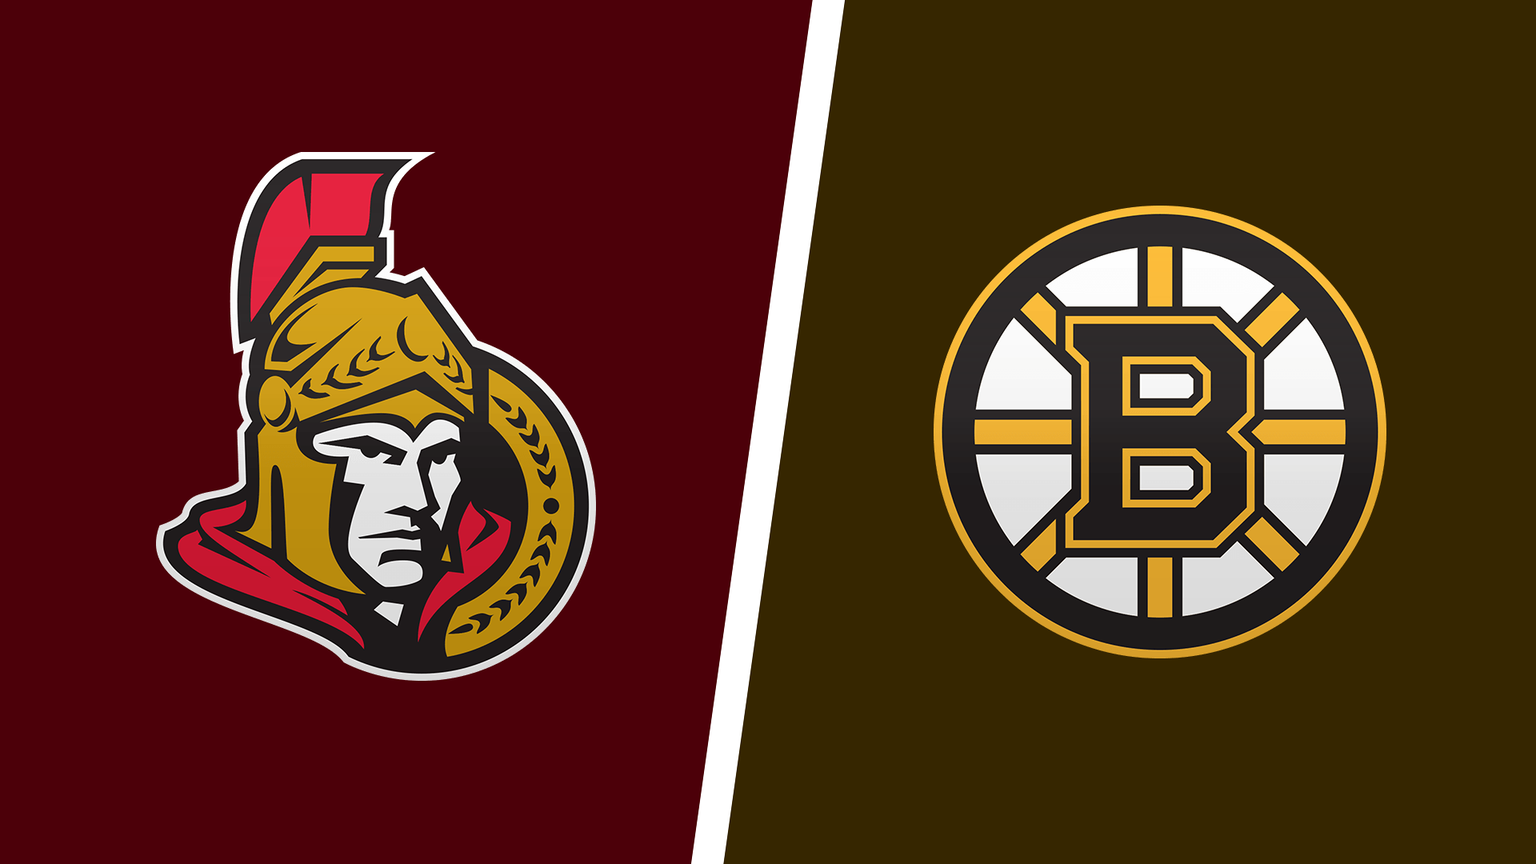 How to Watch Boston Bruins vs. Ottawa Senators Game Live Online on